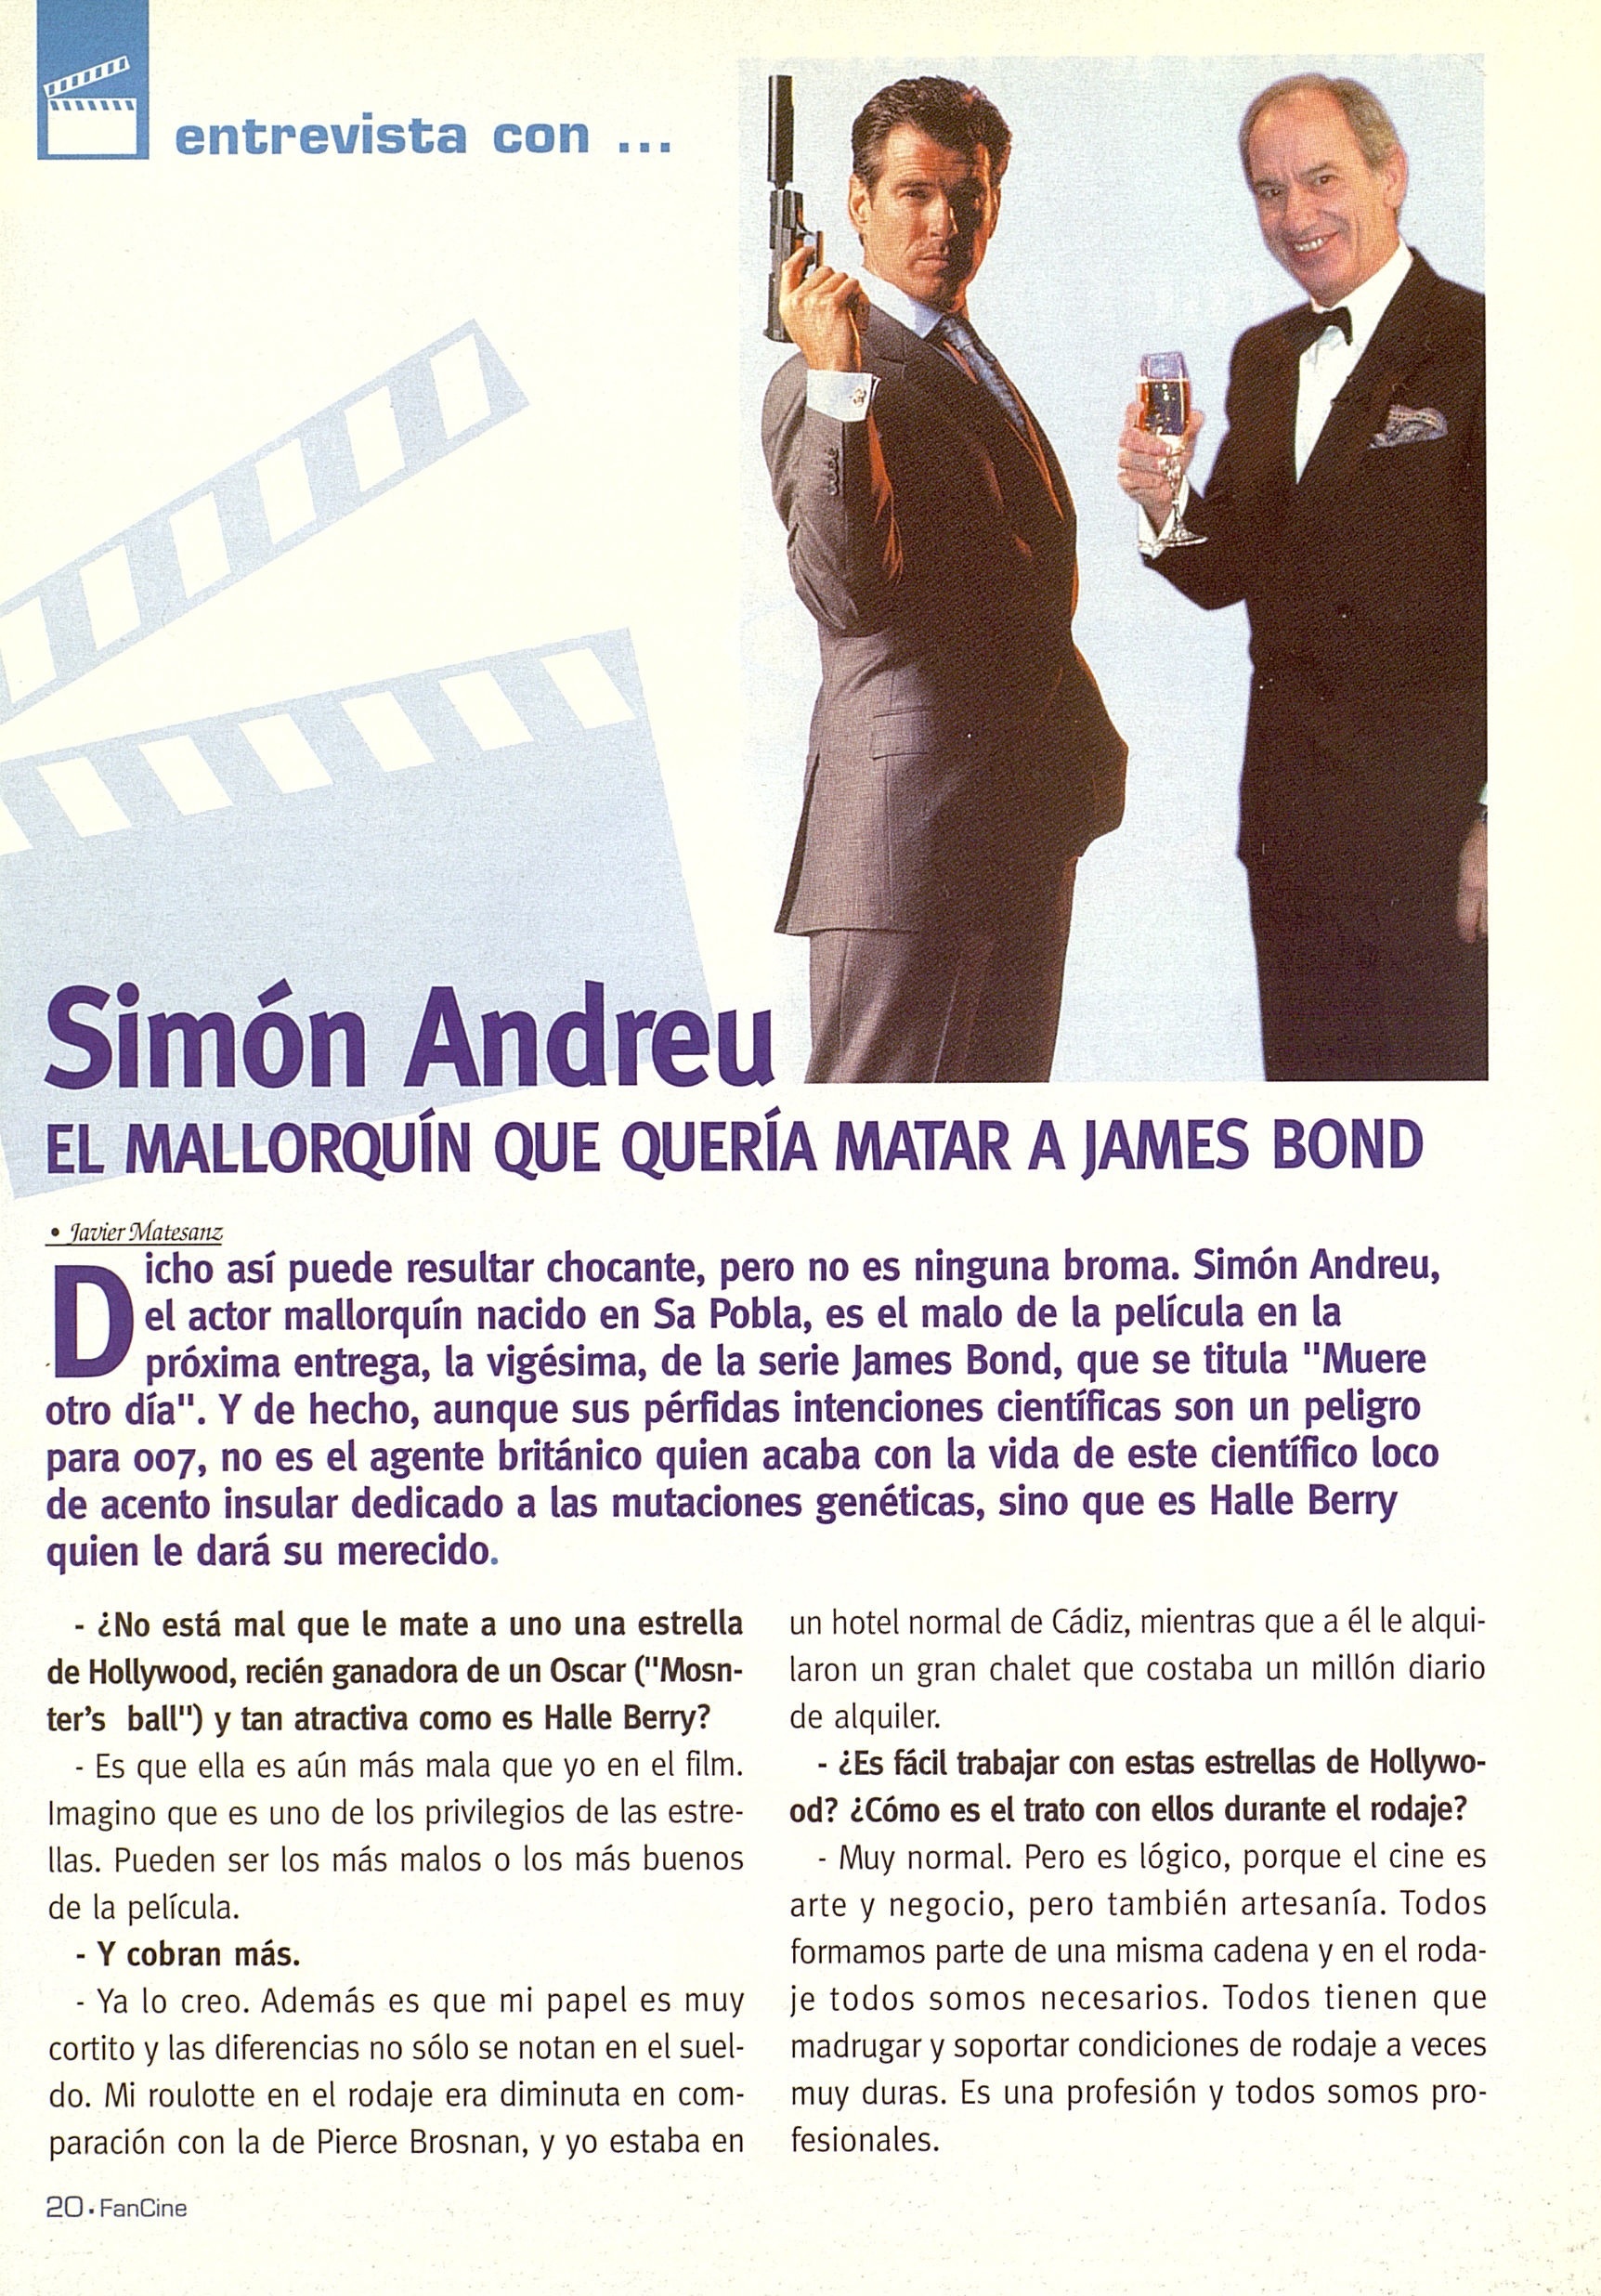 20 2002 07 01 Fan del Cine Palma de Mallorca No070 20 Simon Andreu